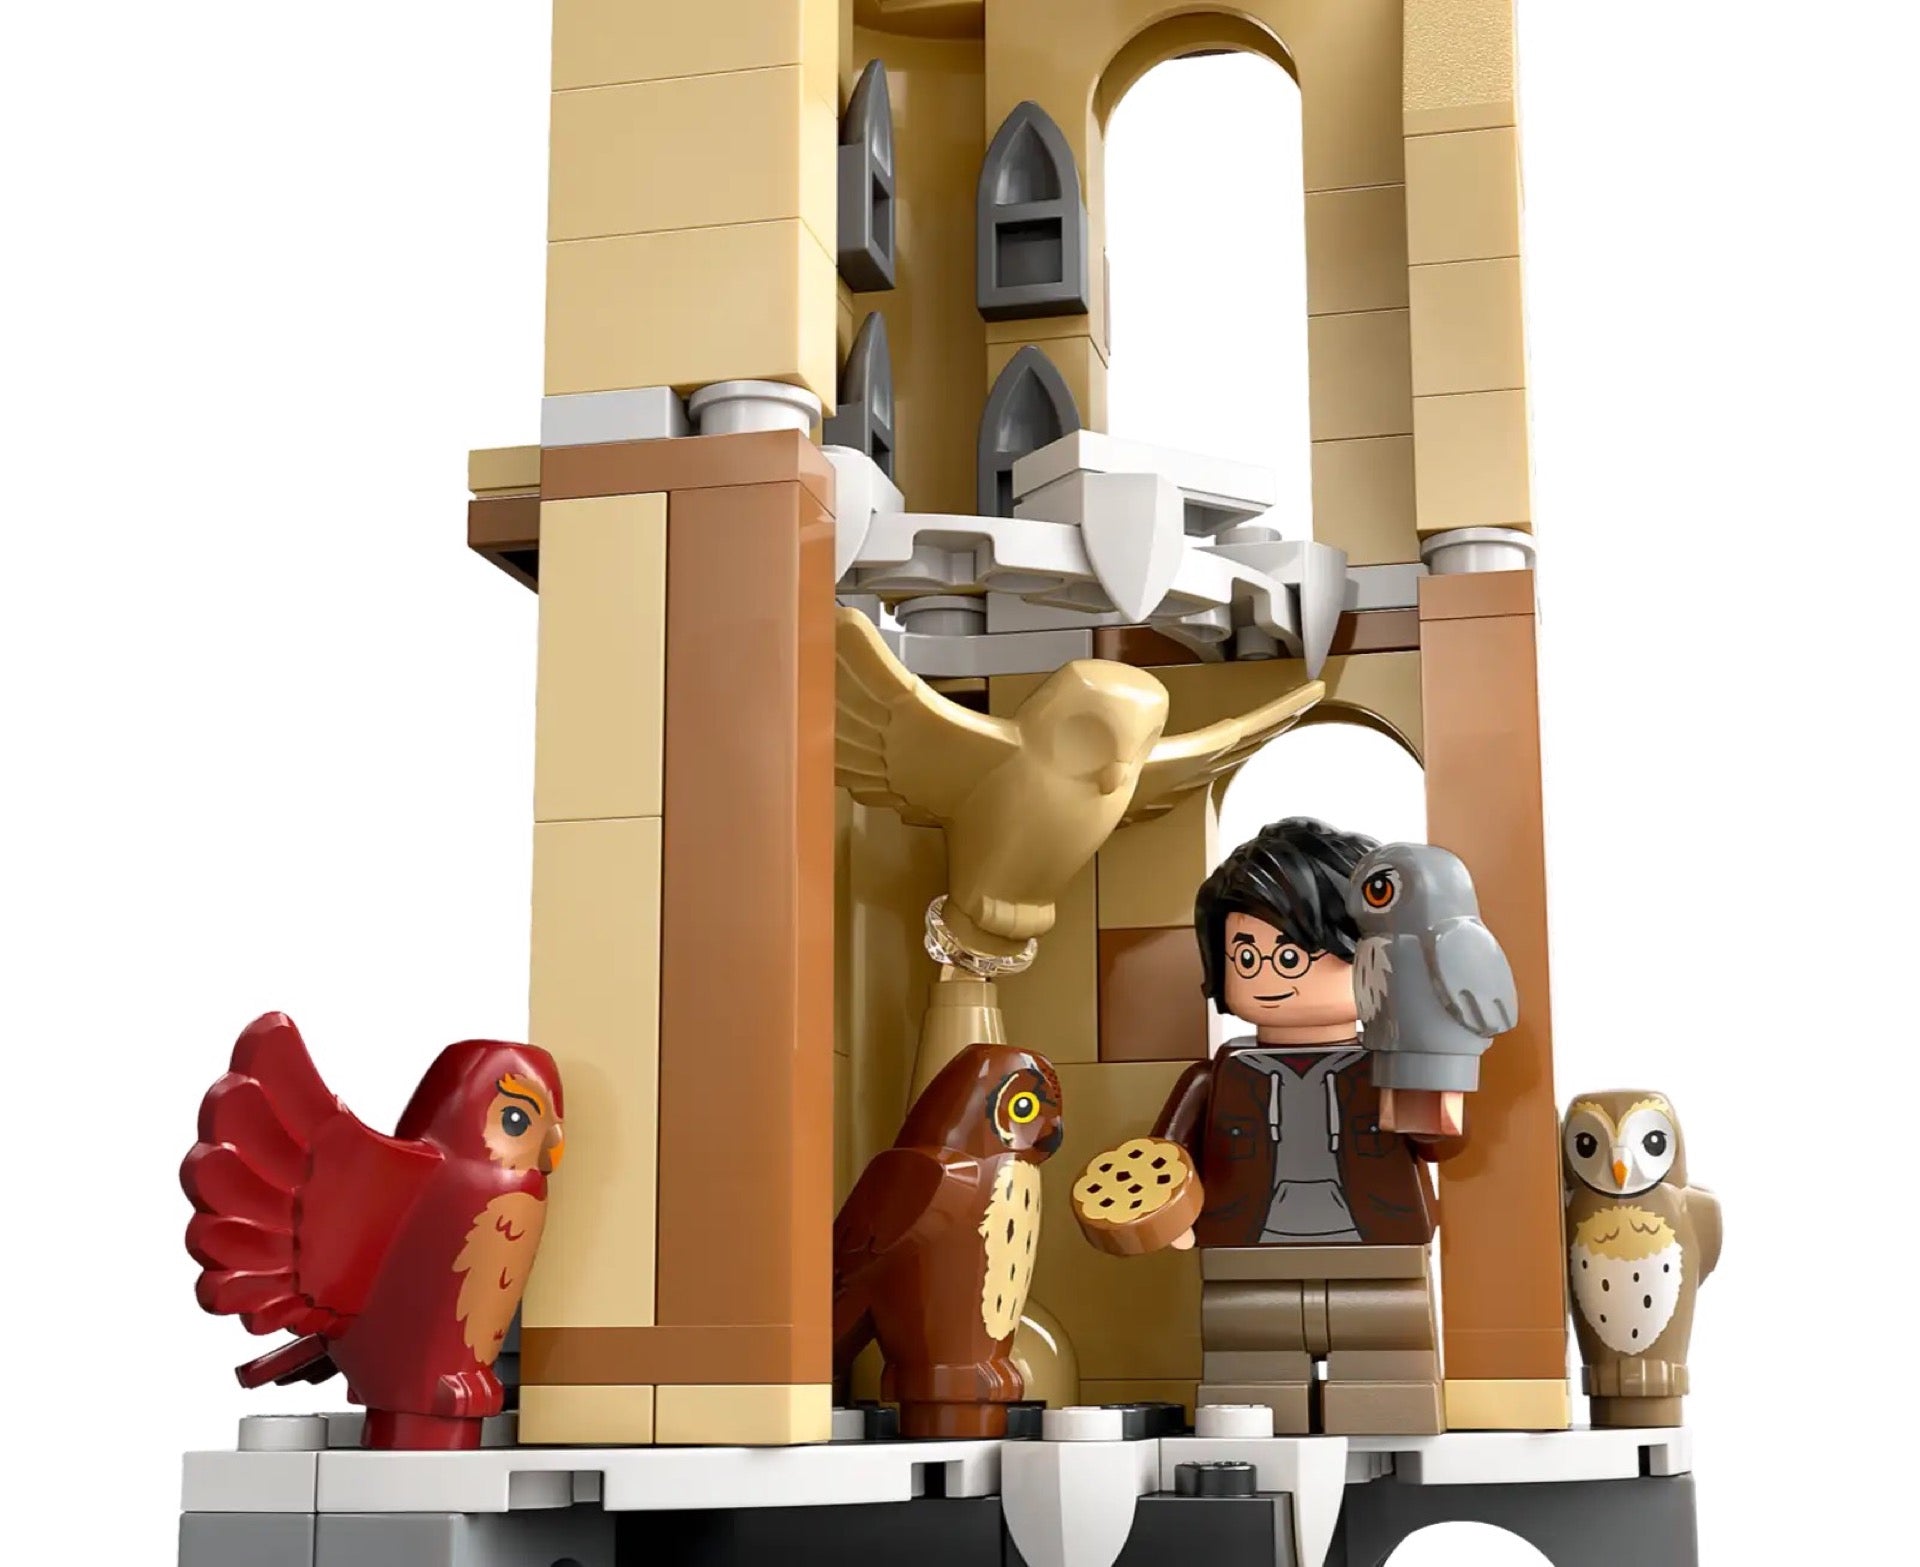 76430 LEGO Harry Potter Guferia del Castello di Hogwarts